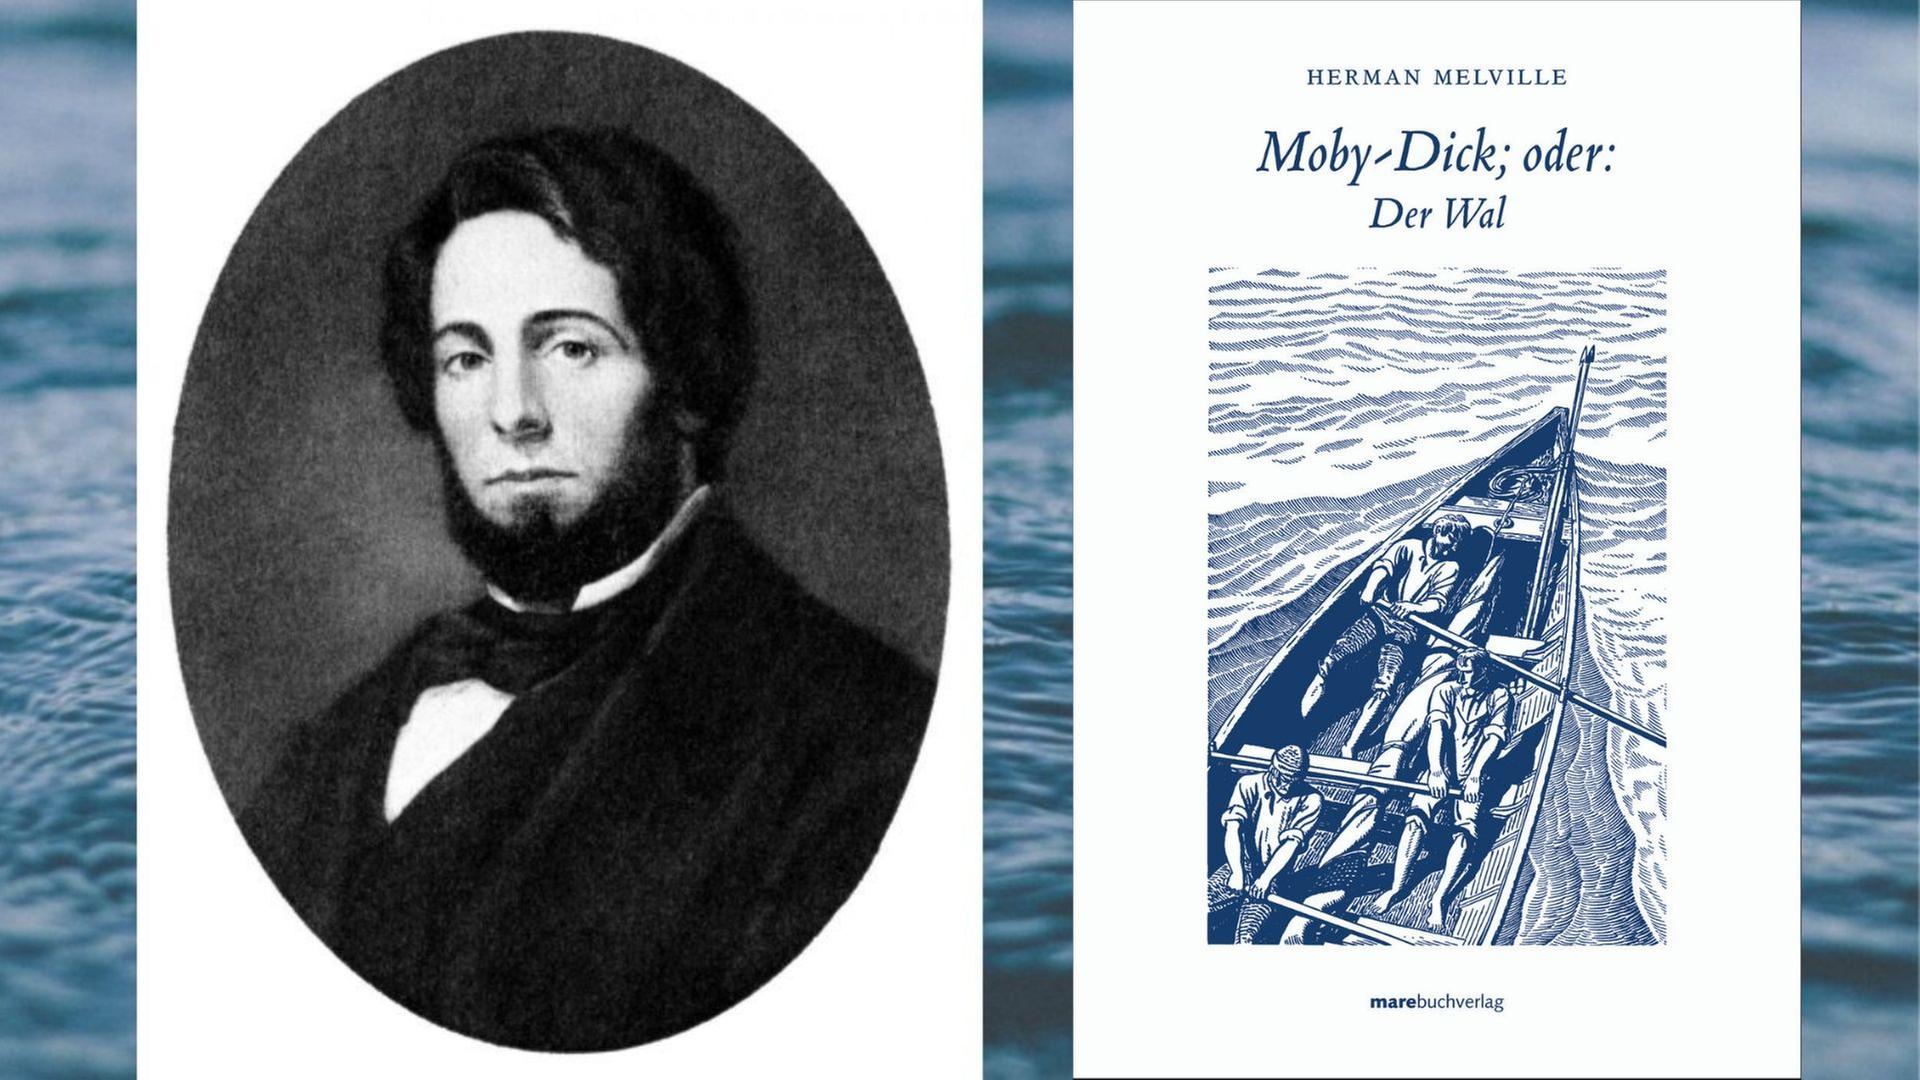 Der Schriftsteller Herman Melville und sein Roman "Moby Dick"